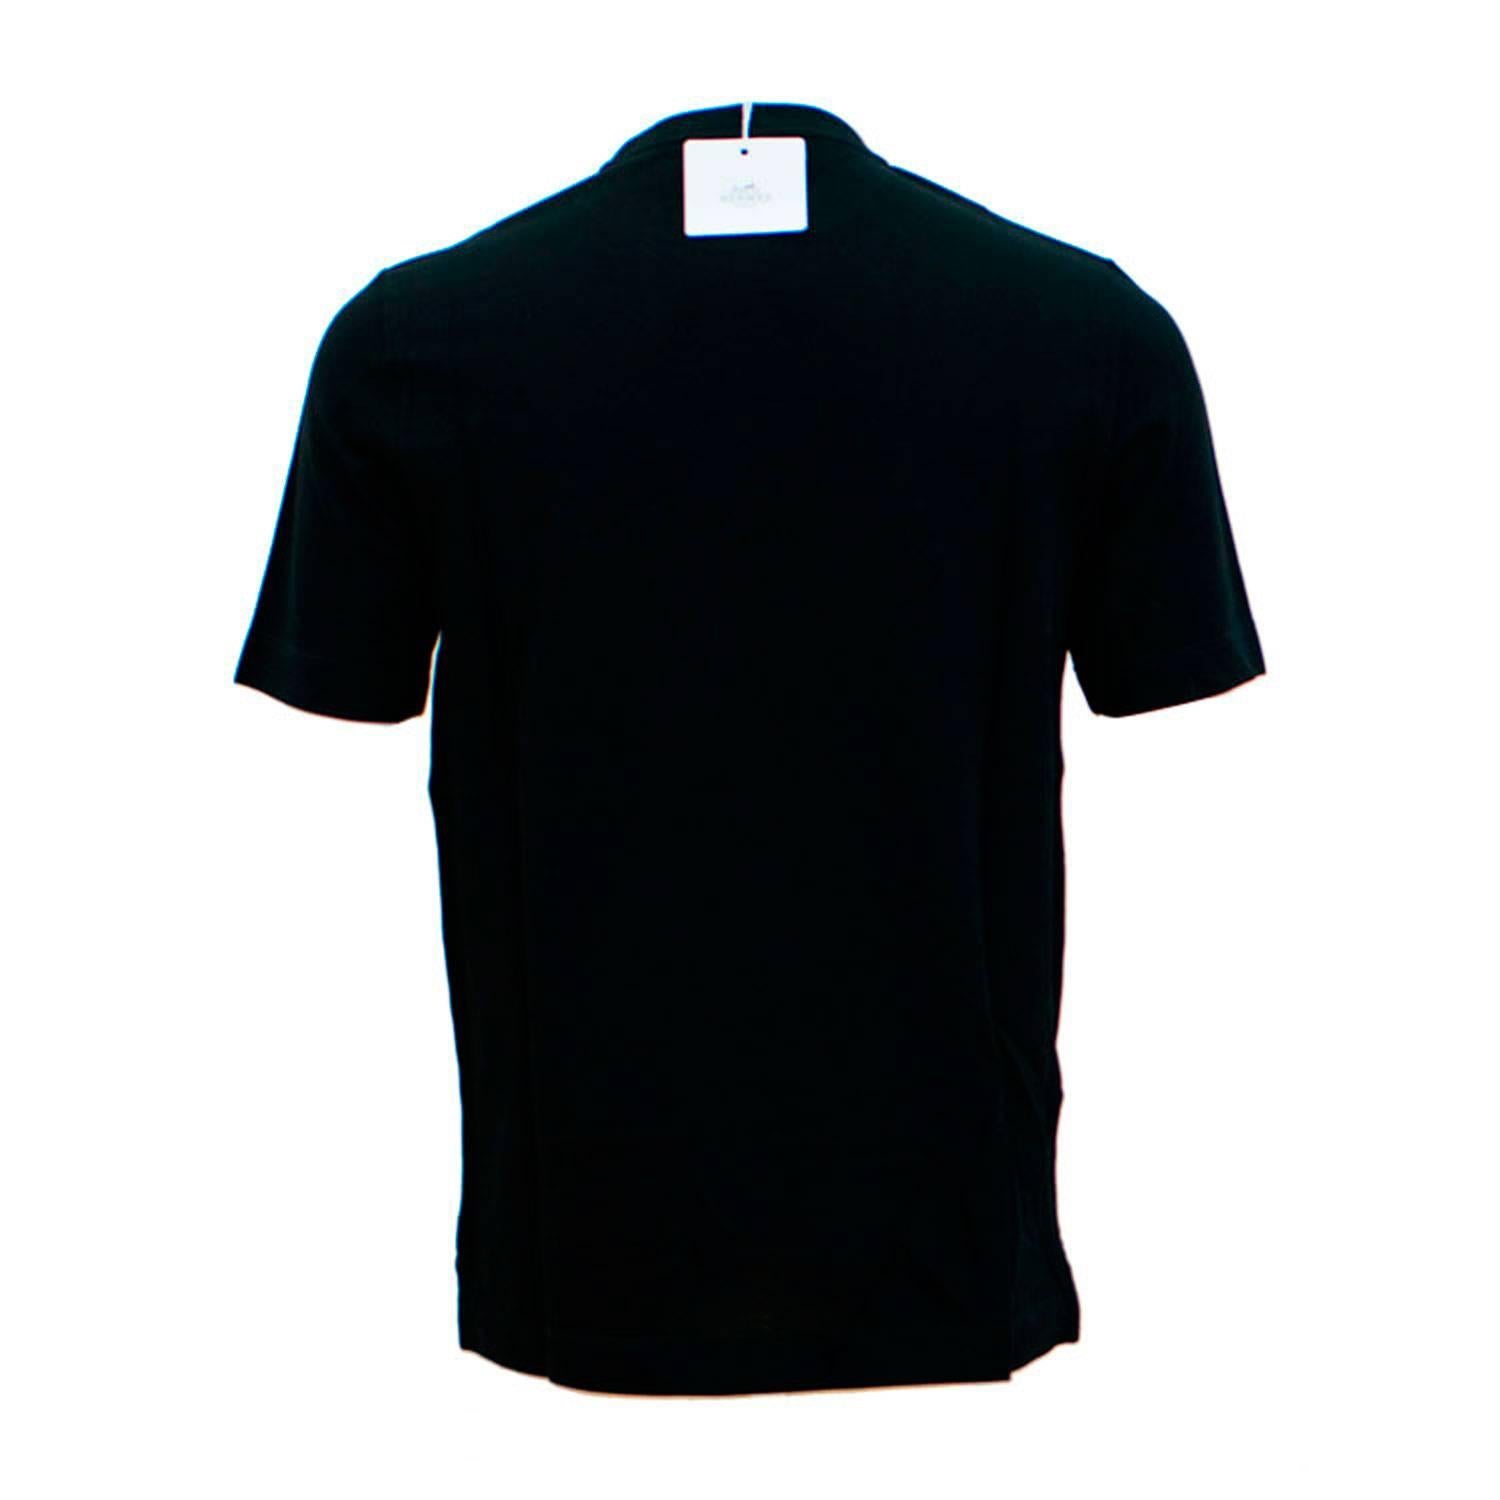 Hermes T-Shirt Ras du Cou Pique de Cotton Size M Color Noir 2016.

Pre-owned and never used.

Bought it in hermes store in 2016.

Size; M.

Composition: Cotton.

Color; Black.

Model; Ras du Cou Pique de Cotton.

Details: 
- Original